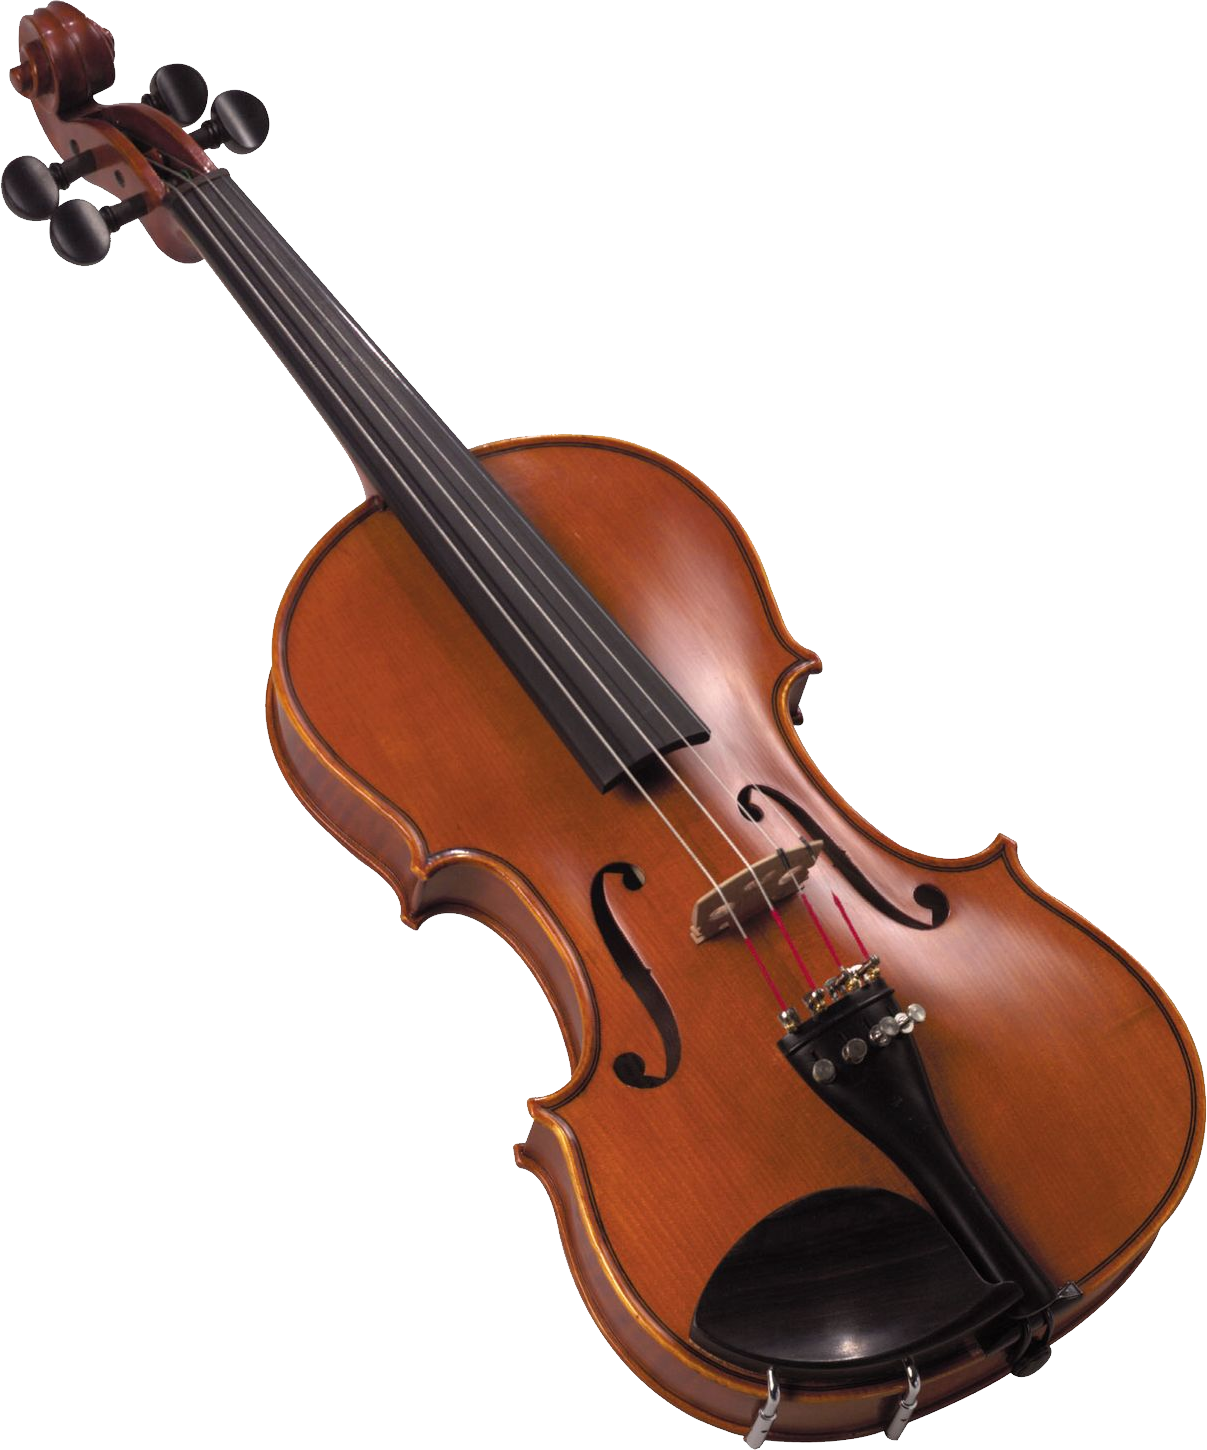 Скрипка д. Альт струнные смычковые музыкальные инструменты. Виолина музыкальный инструмент. Смычок струнные смычковые музыкальные инструменты. Скрепка музыкальная инструмент.